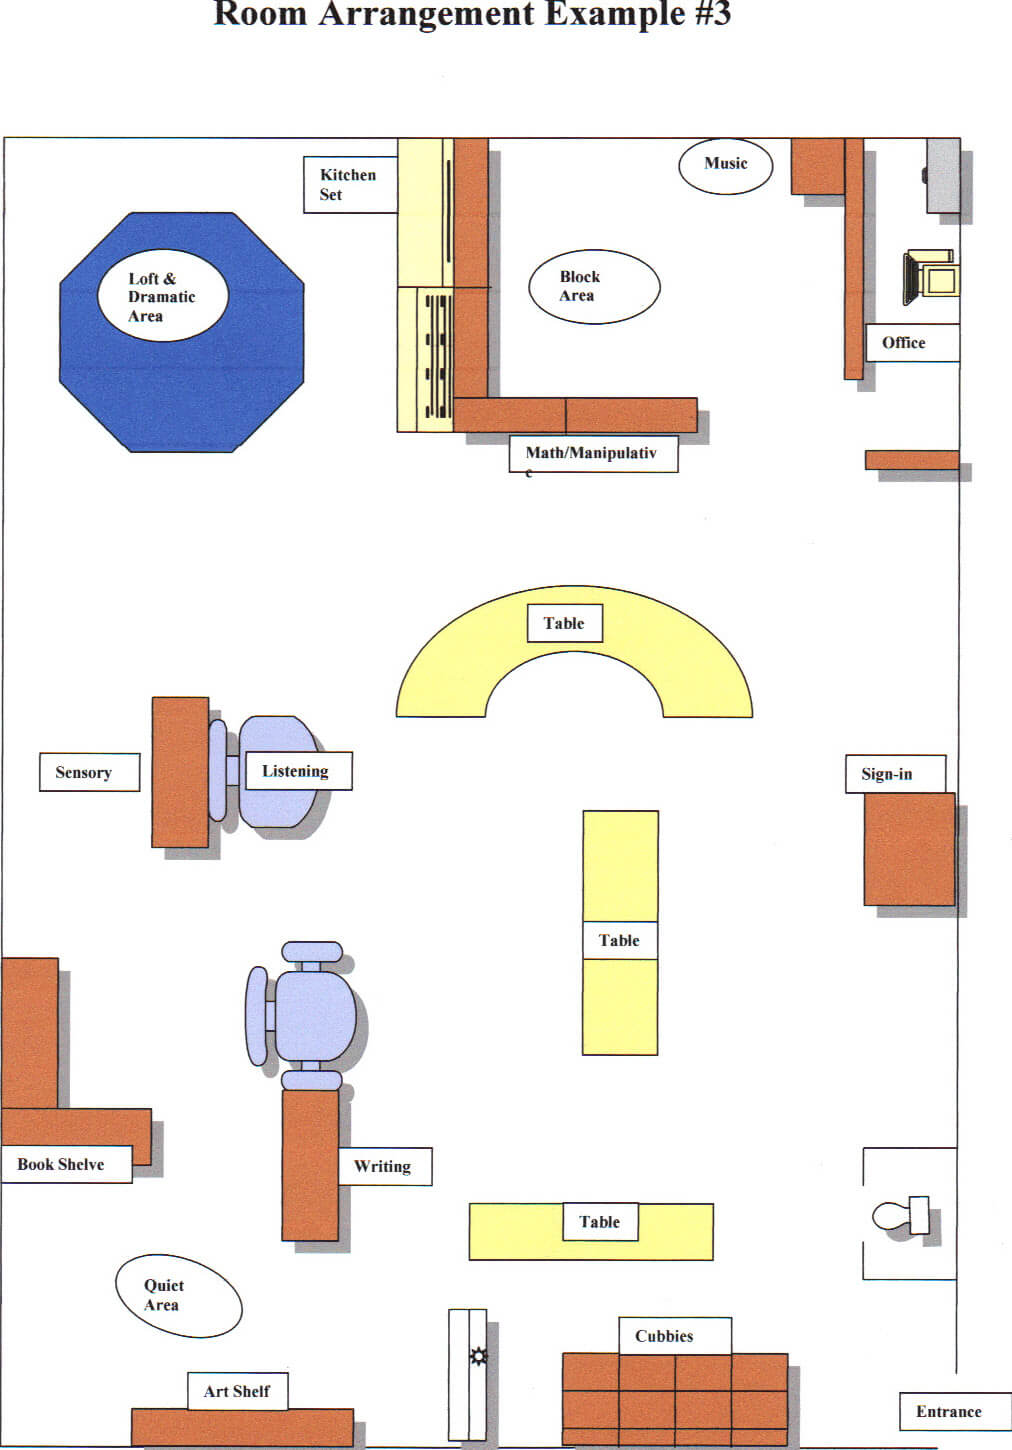 Room arrangement - Example 3